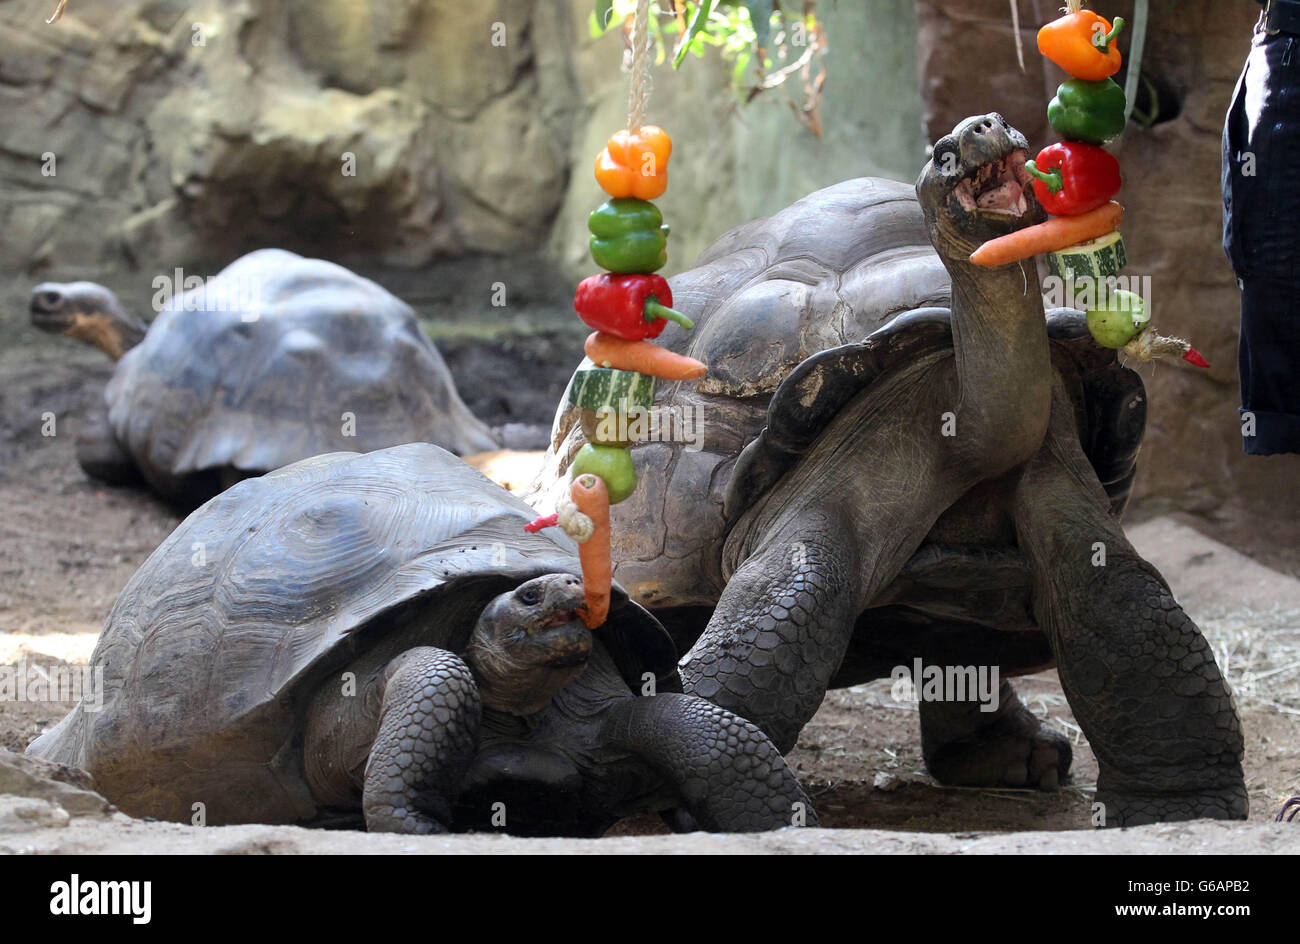 L-R Dolly e Dirk, le tartarughe Galapagos vengono nutrite di frutta e verdura penzolate di fronte a loro come un modo divertente di essere nutriti, allo Zoo di Londra. Foto Stock